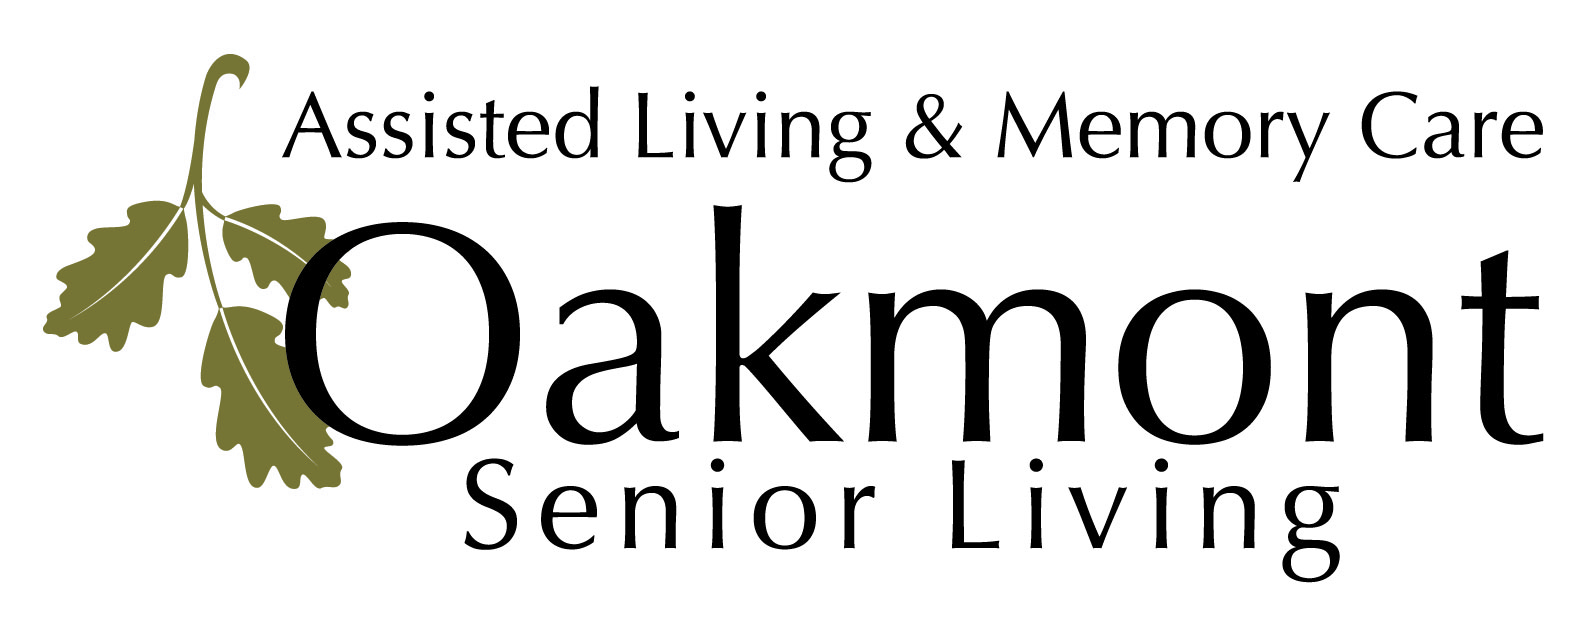 A. Oakmont Senior Living (Presenting)